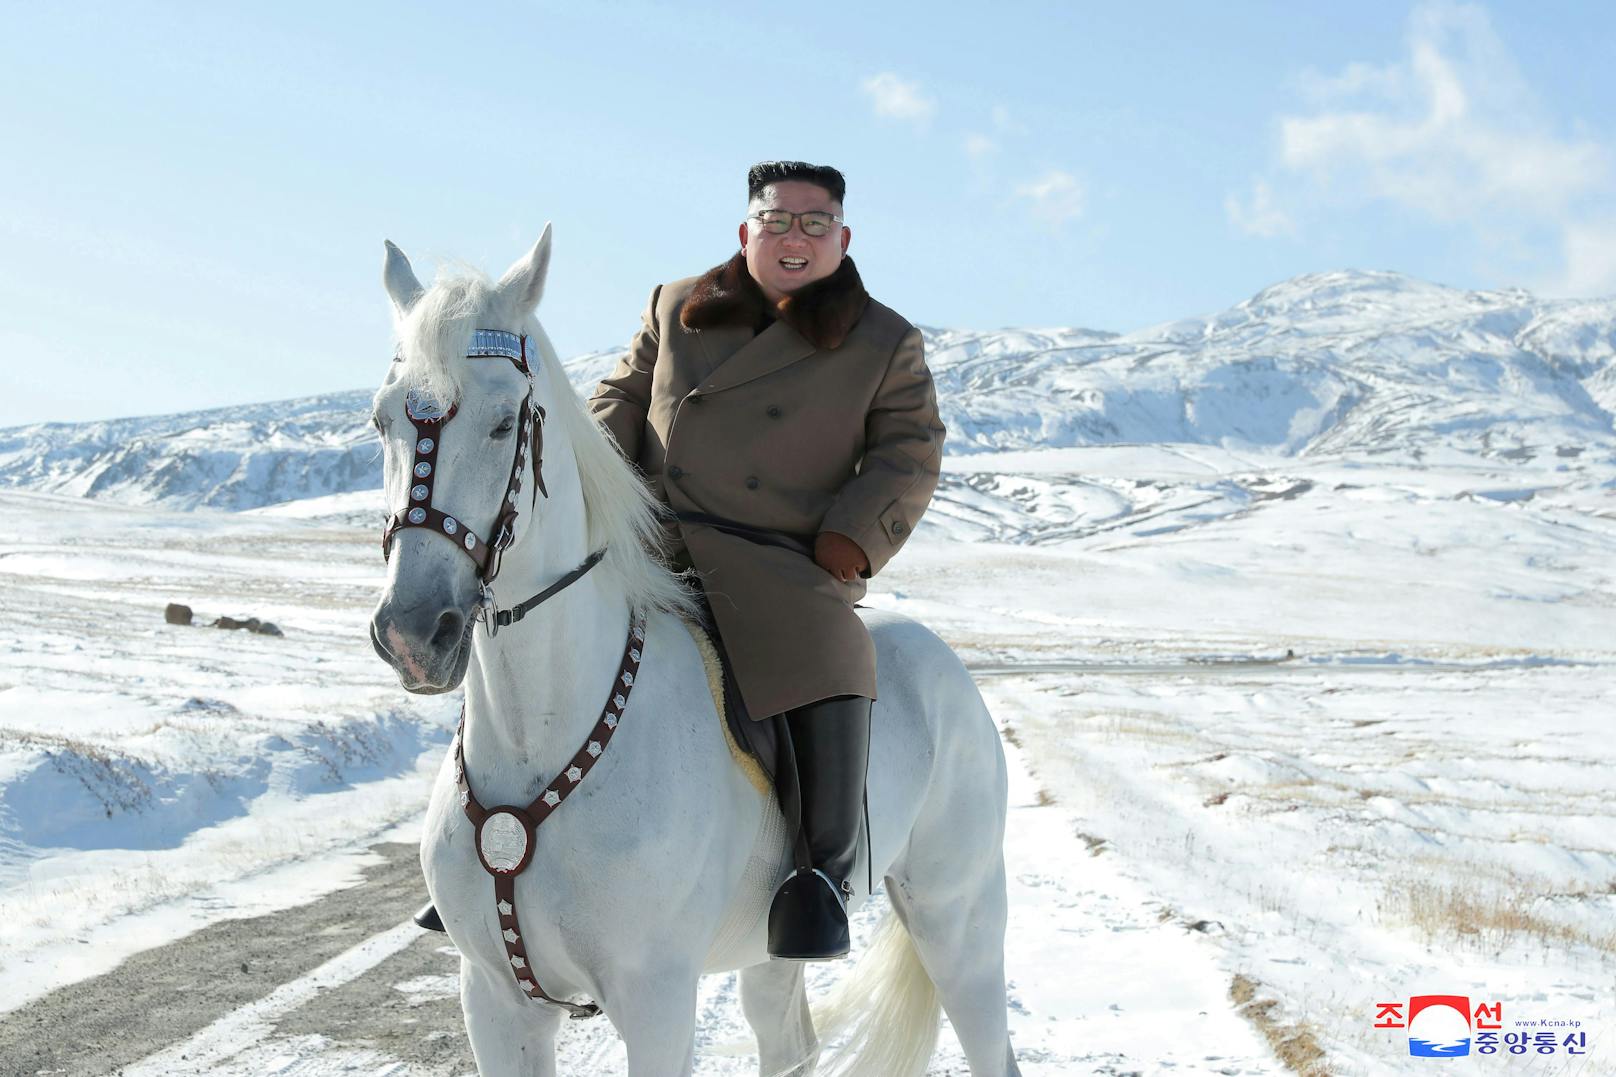 Kim Jong-Un bestitzt mehrere solcher Pferde – wie viele genau, ist unbekannt.